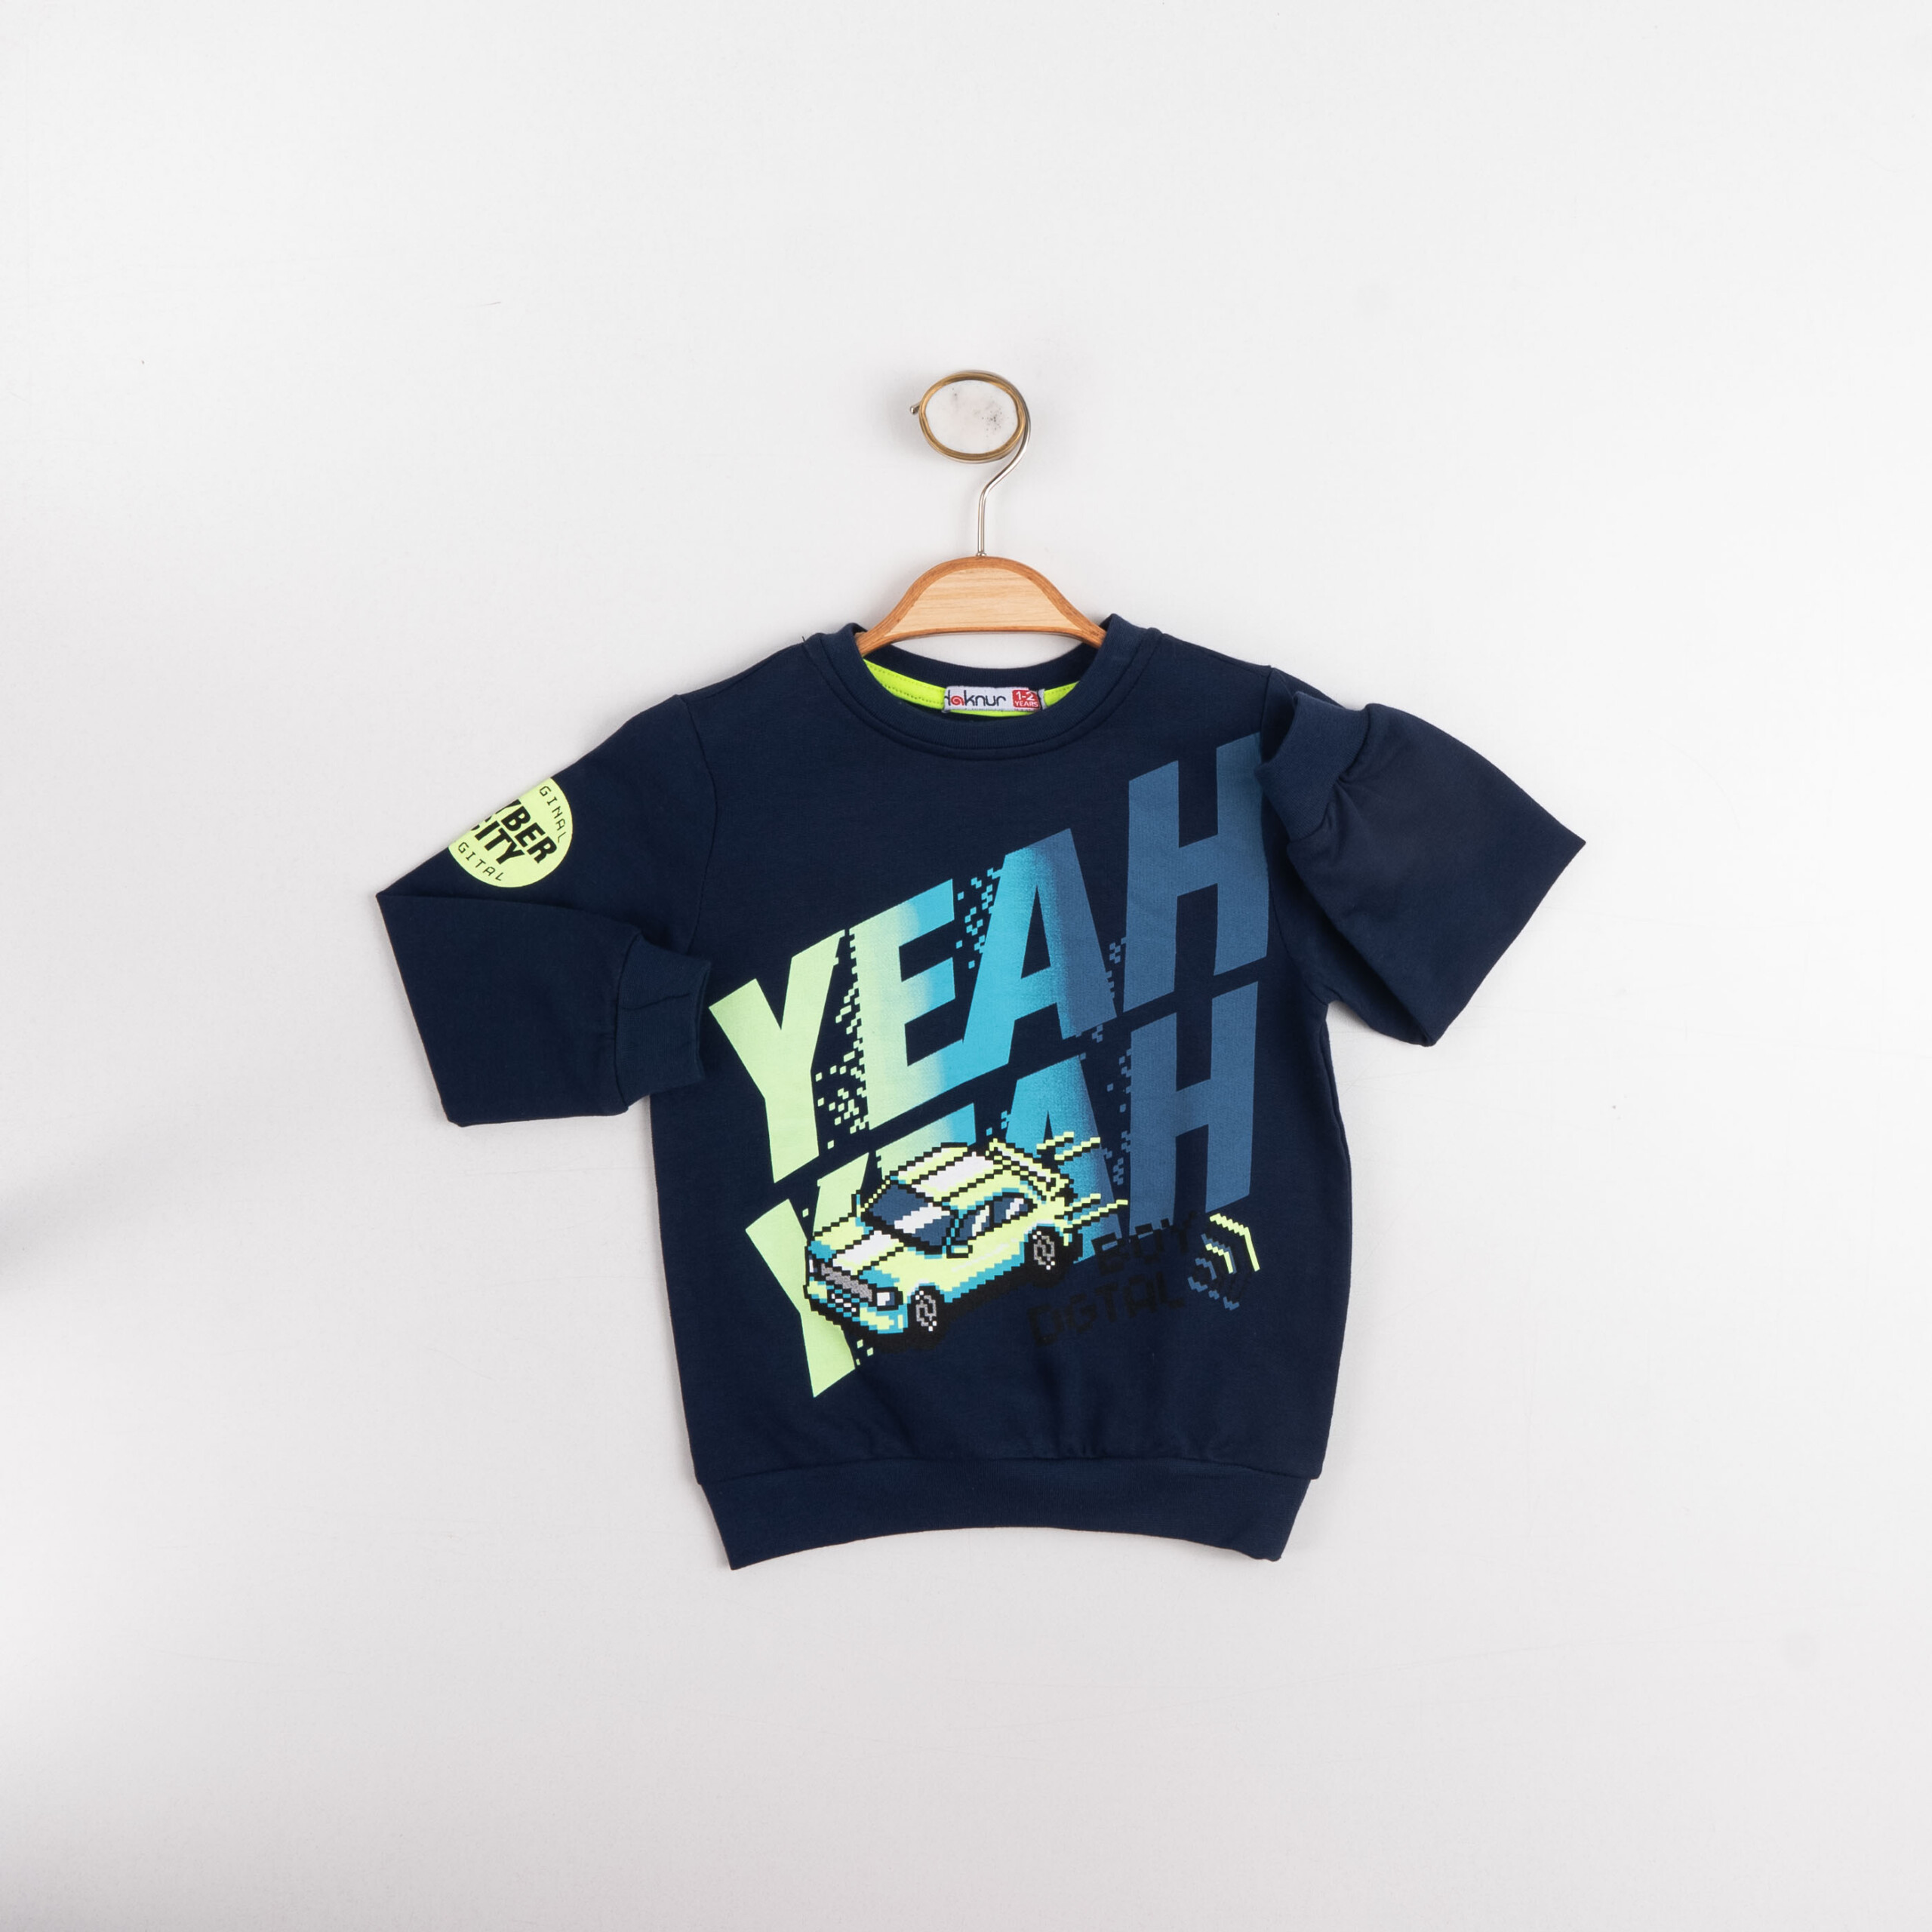 Boy And Baby Boy Long Sleeve T-Shirt / 1Y | 2Y | 3Y | 4Y - Kids Fashion Turkey